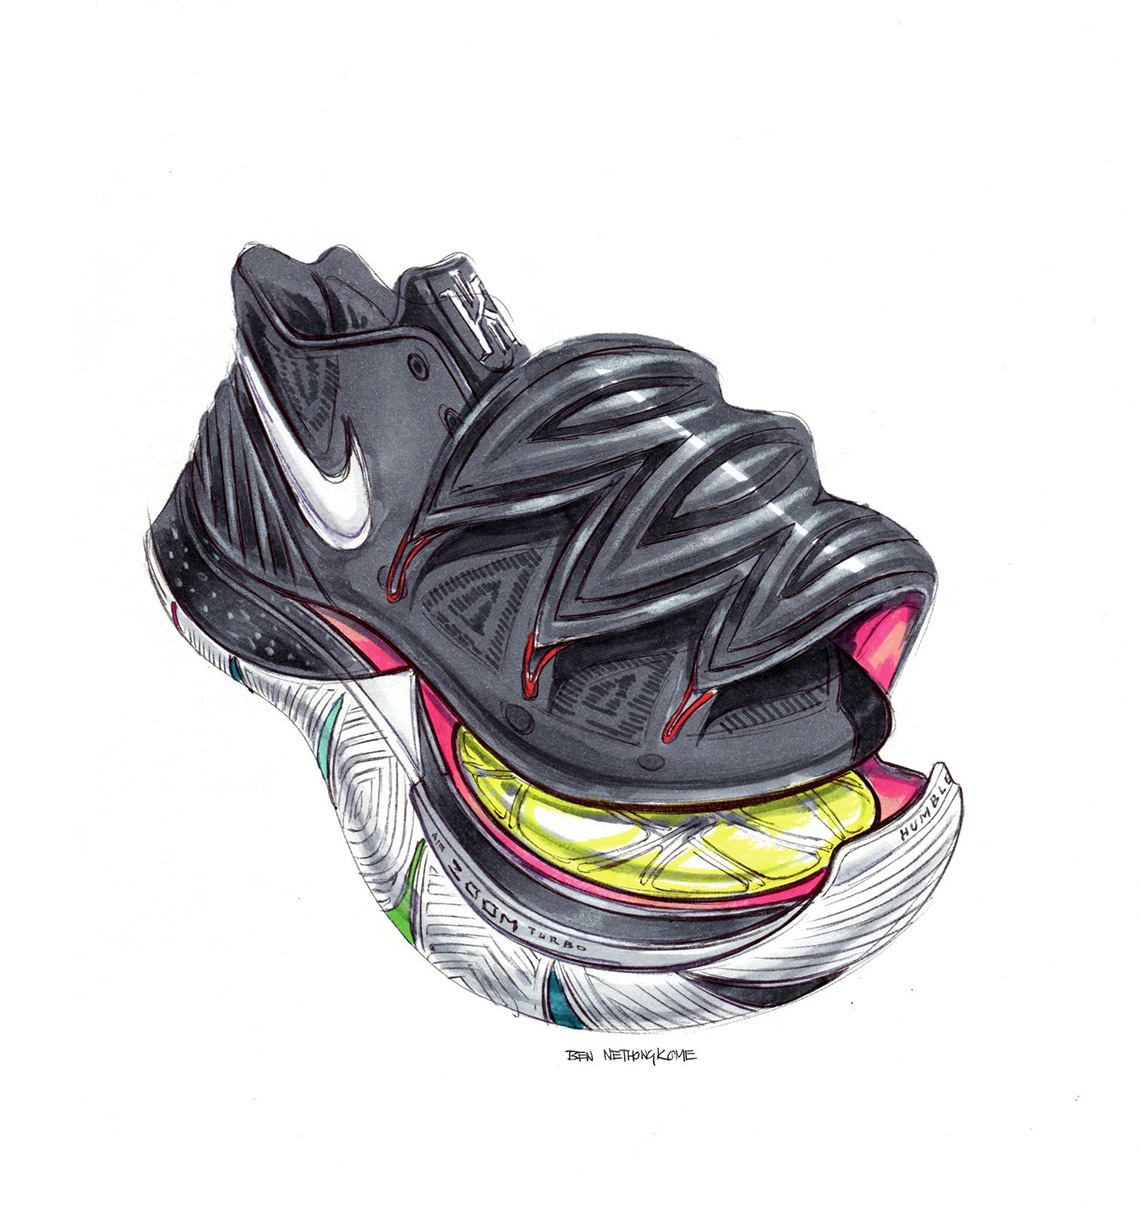 Nike Kyrie 5 Sketches Ben Nethongkome 8